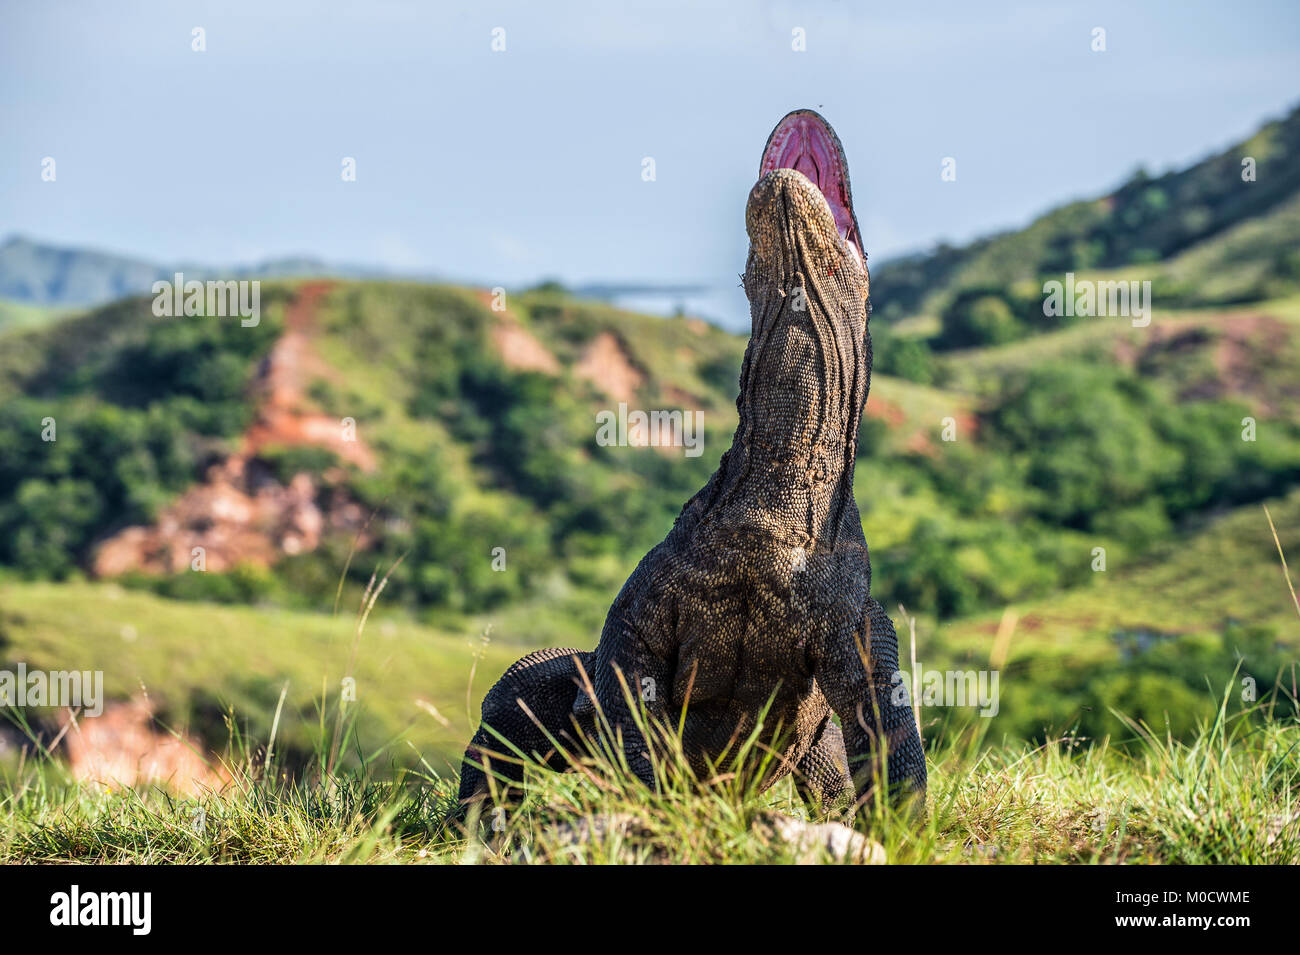 Il drago di Komodo Varanus komodoensis sollevata la testa con la bocca aperta. È la più grande lucertola vivente nel mondo. Isola Rinca. Indonesia. Foto Stock